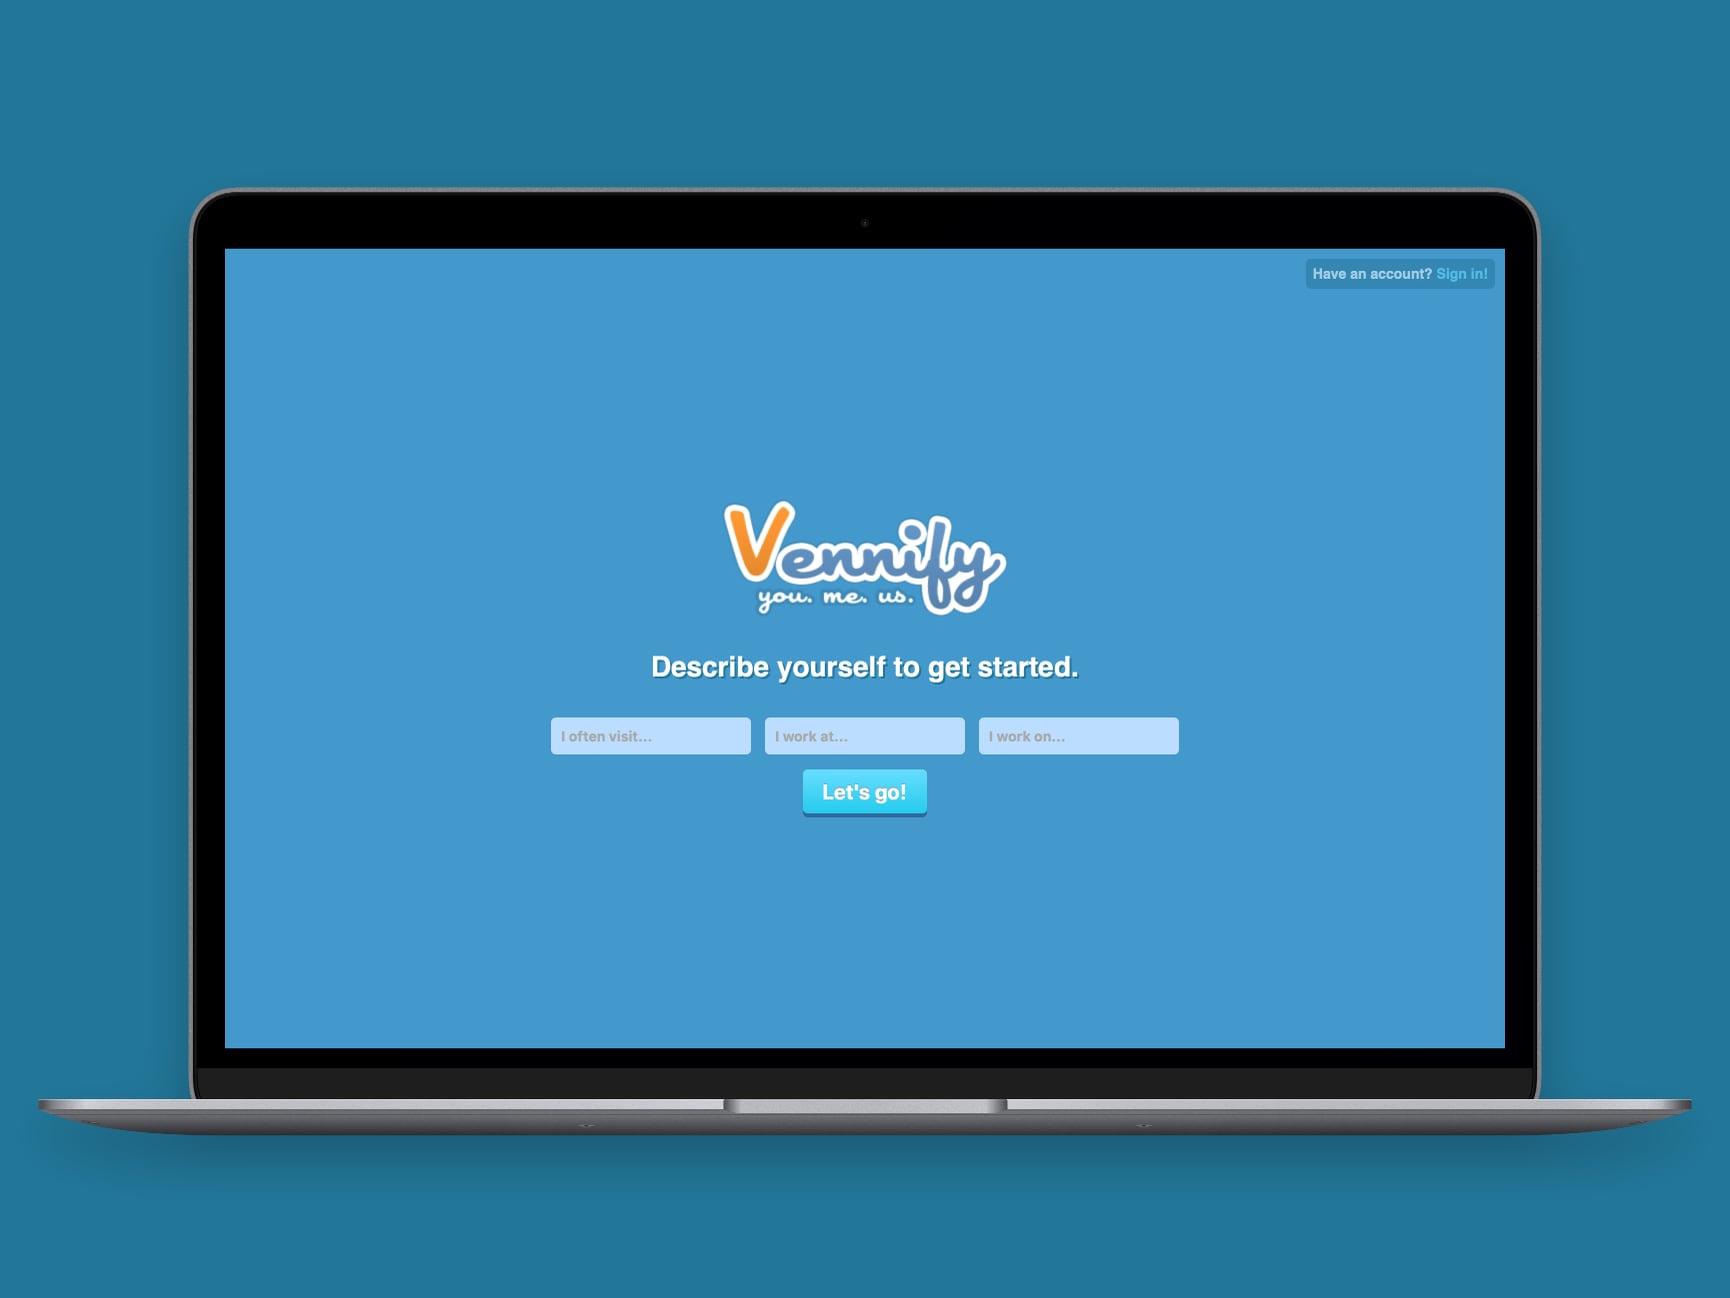 Screenshot of the website Vennify